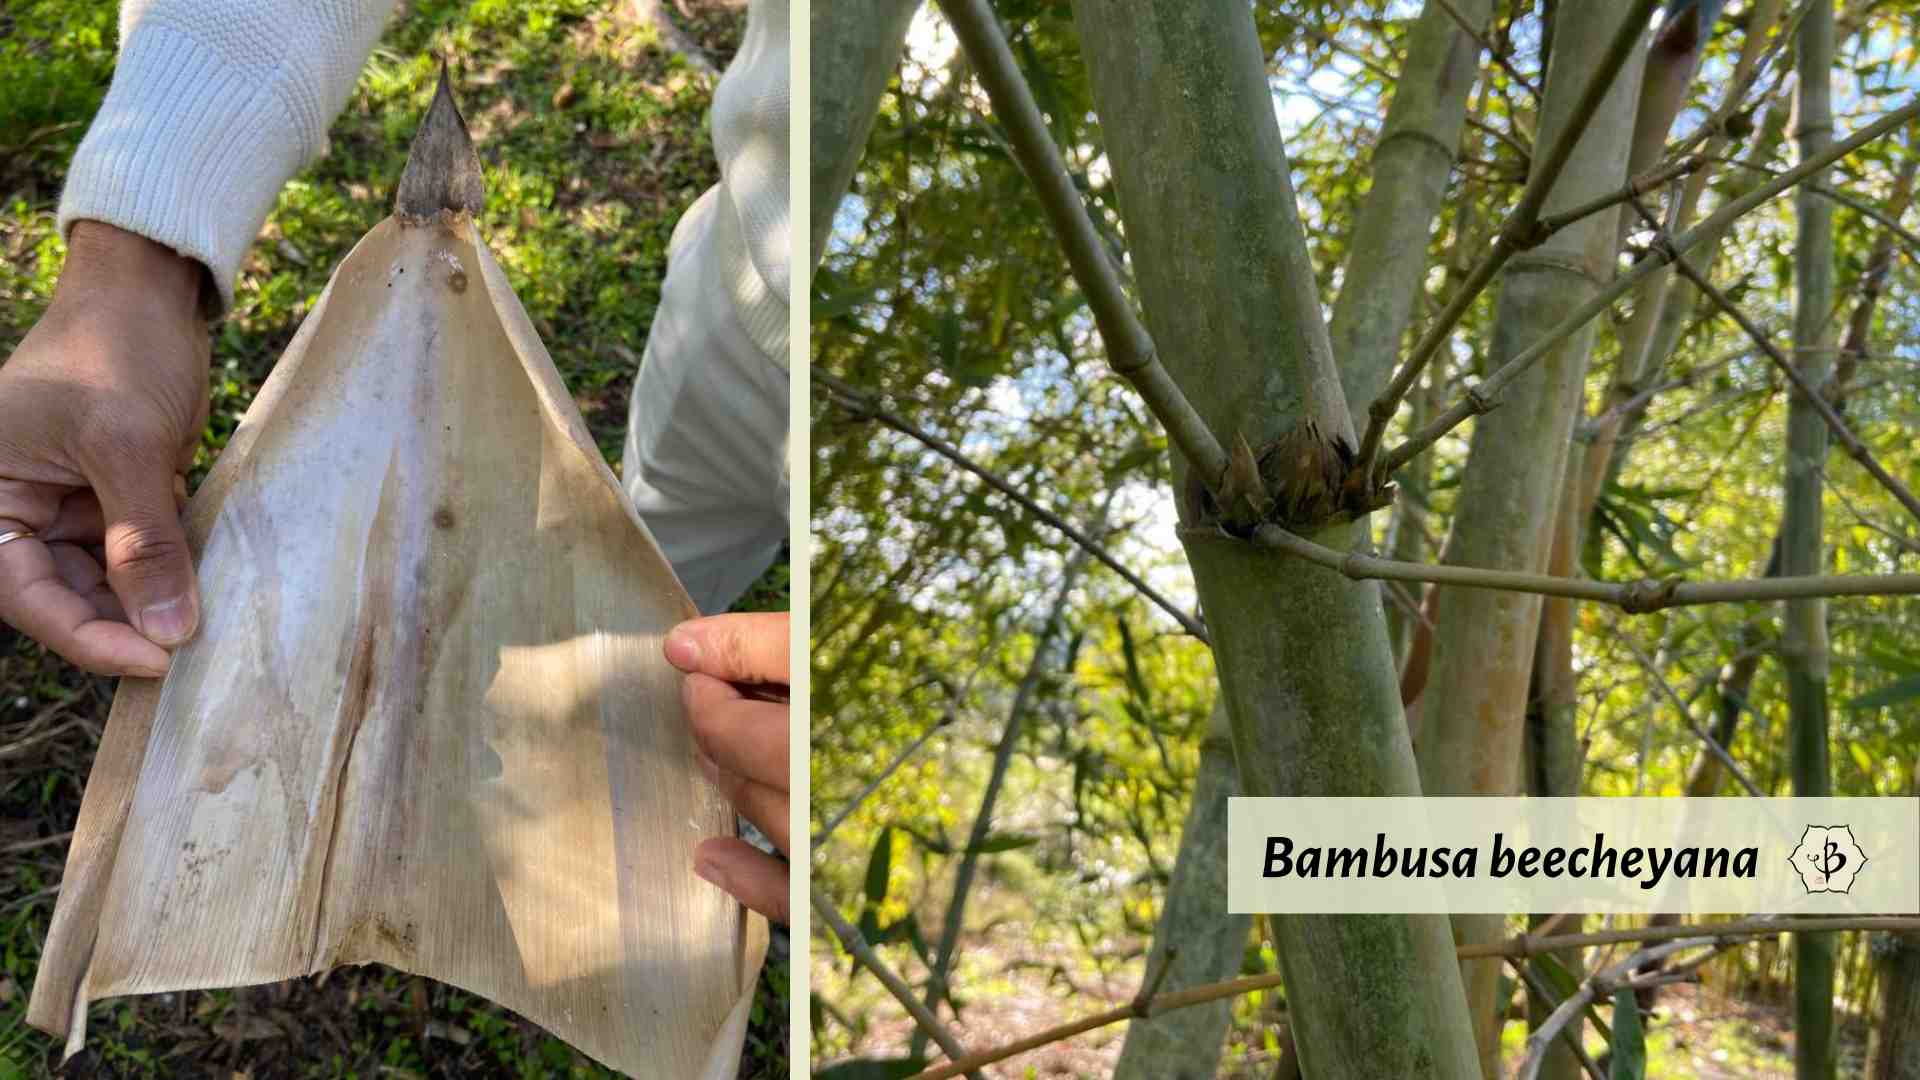 Bambusa beecheyana identification